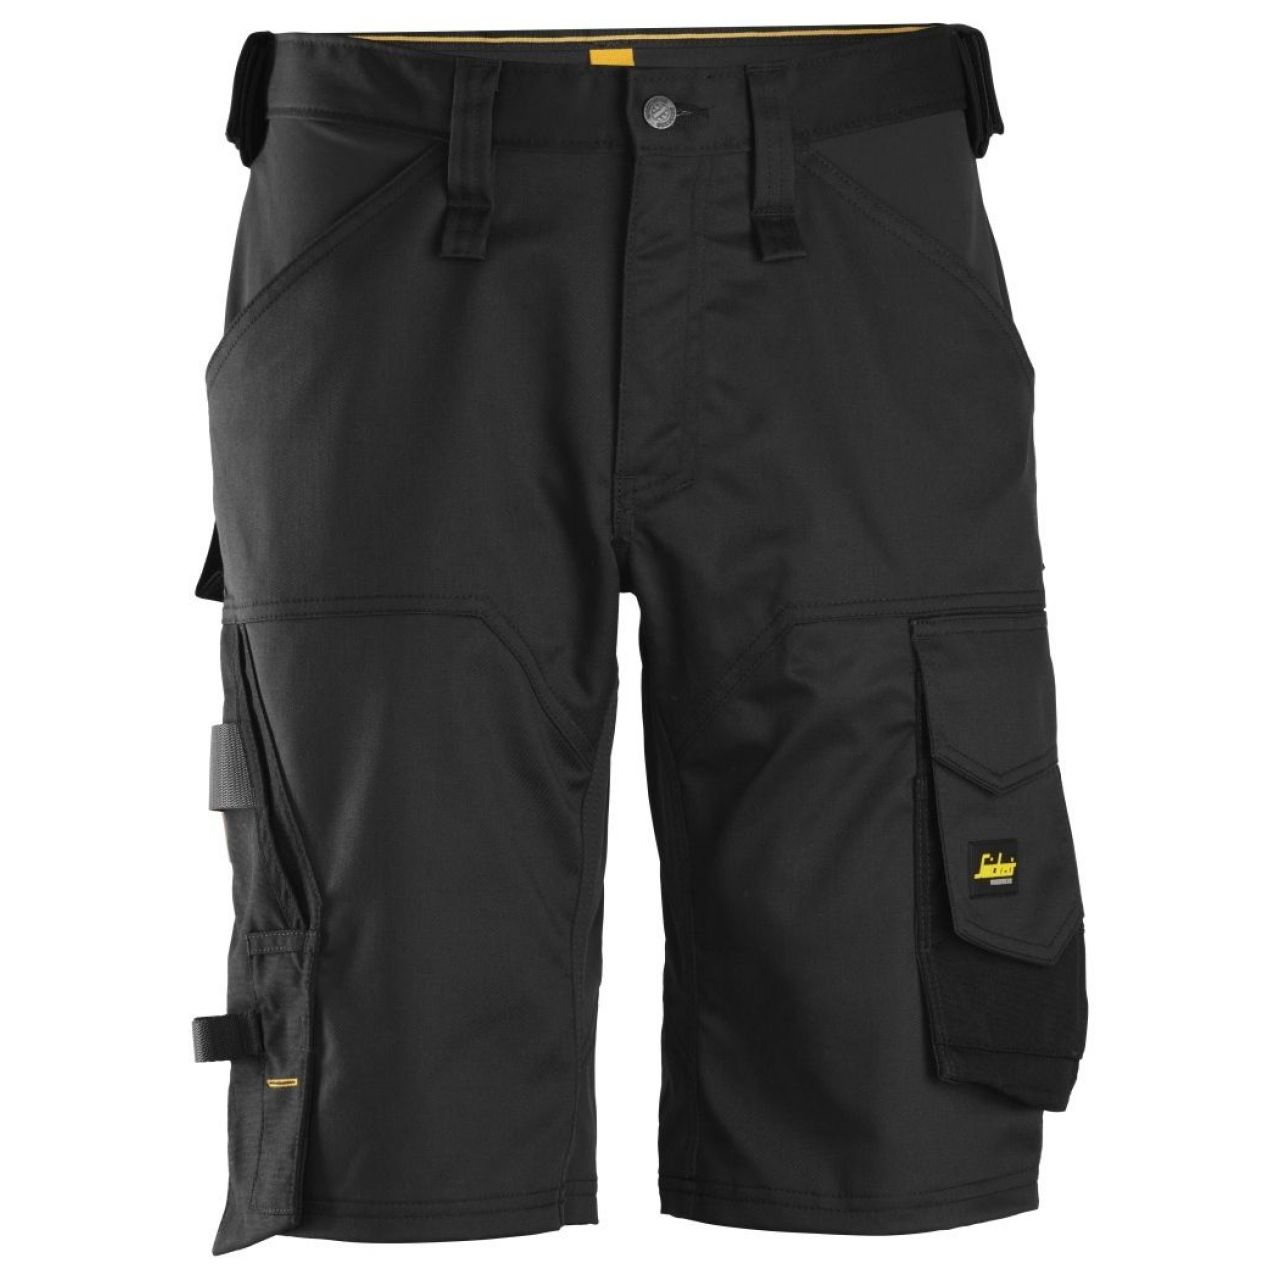 Pantalon corto elastico holgado AllroundWork negro talla 052